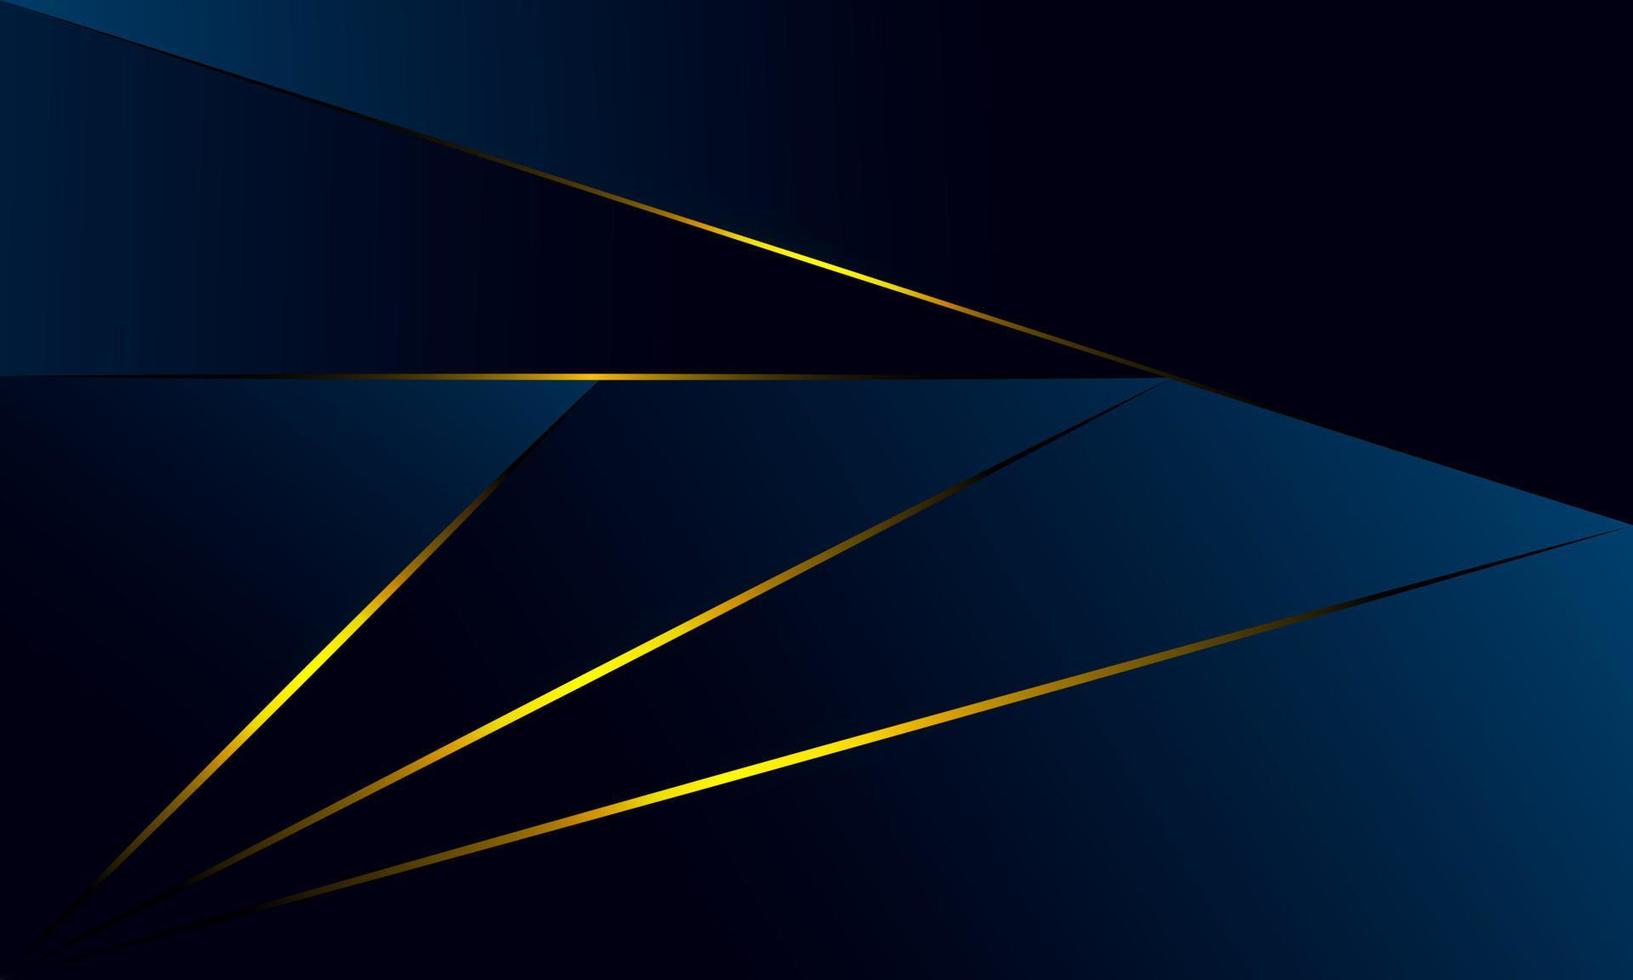 Abstrakte blaue Polygondreiecke formen Musterhintergrund mit goldener Linie und Lichteffektluxusart. digitales Technologiekonzept des Illustrationsvektordesigns. vektor